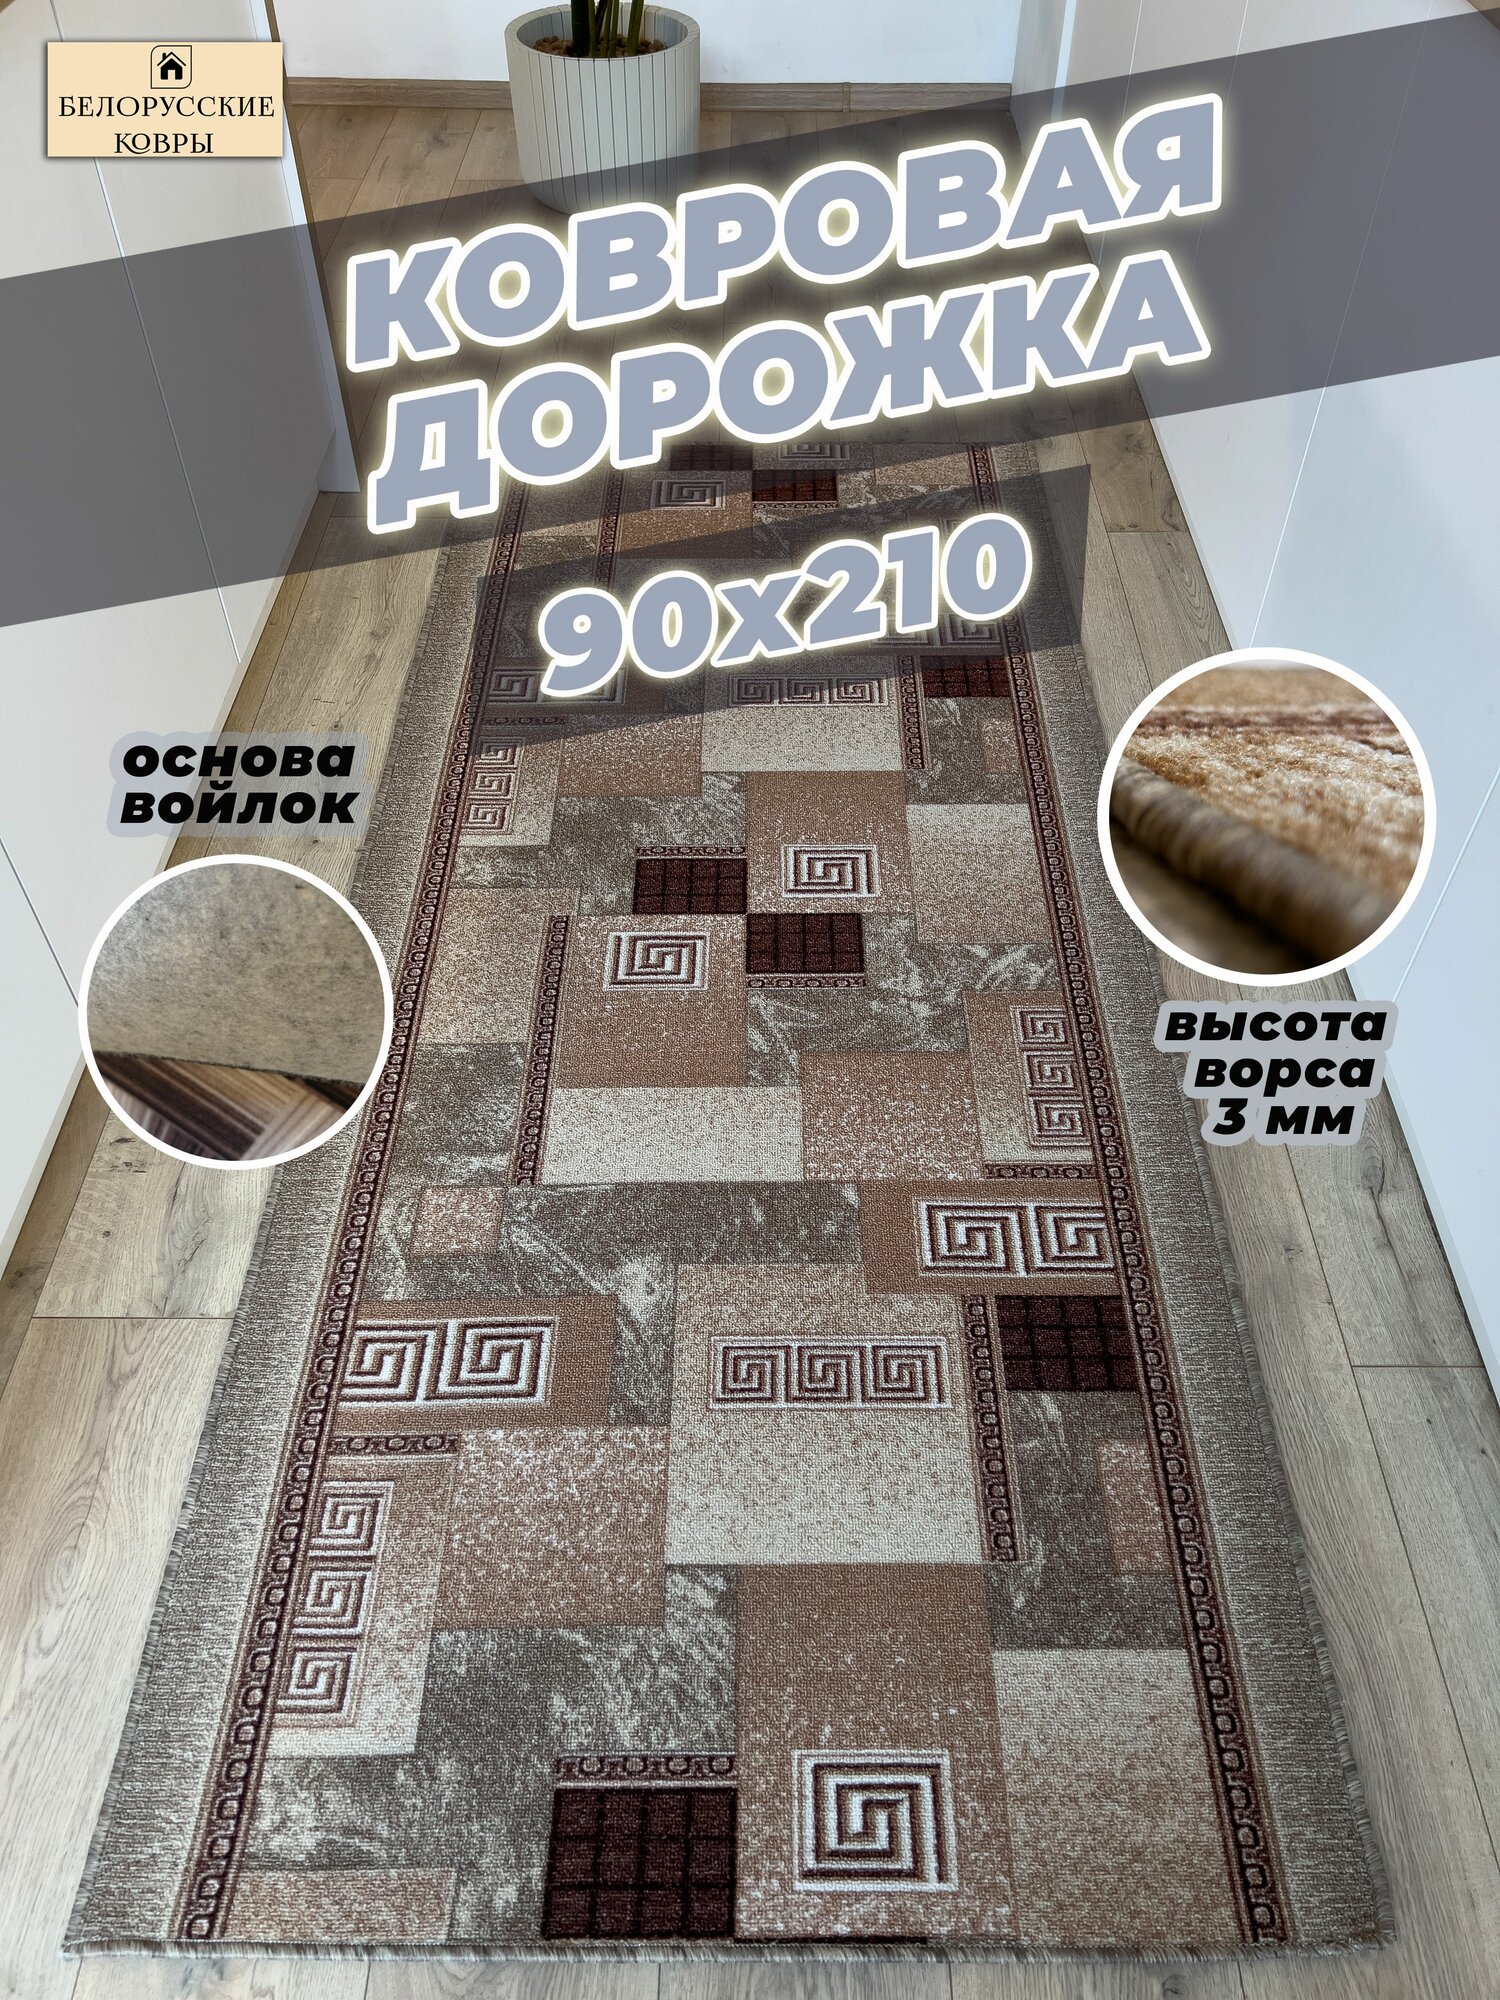 Белорусские ковры, ковровая дорожка 90х210см./0,9х2,10м.